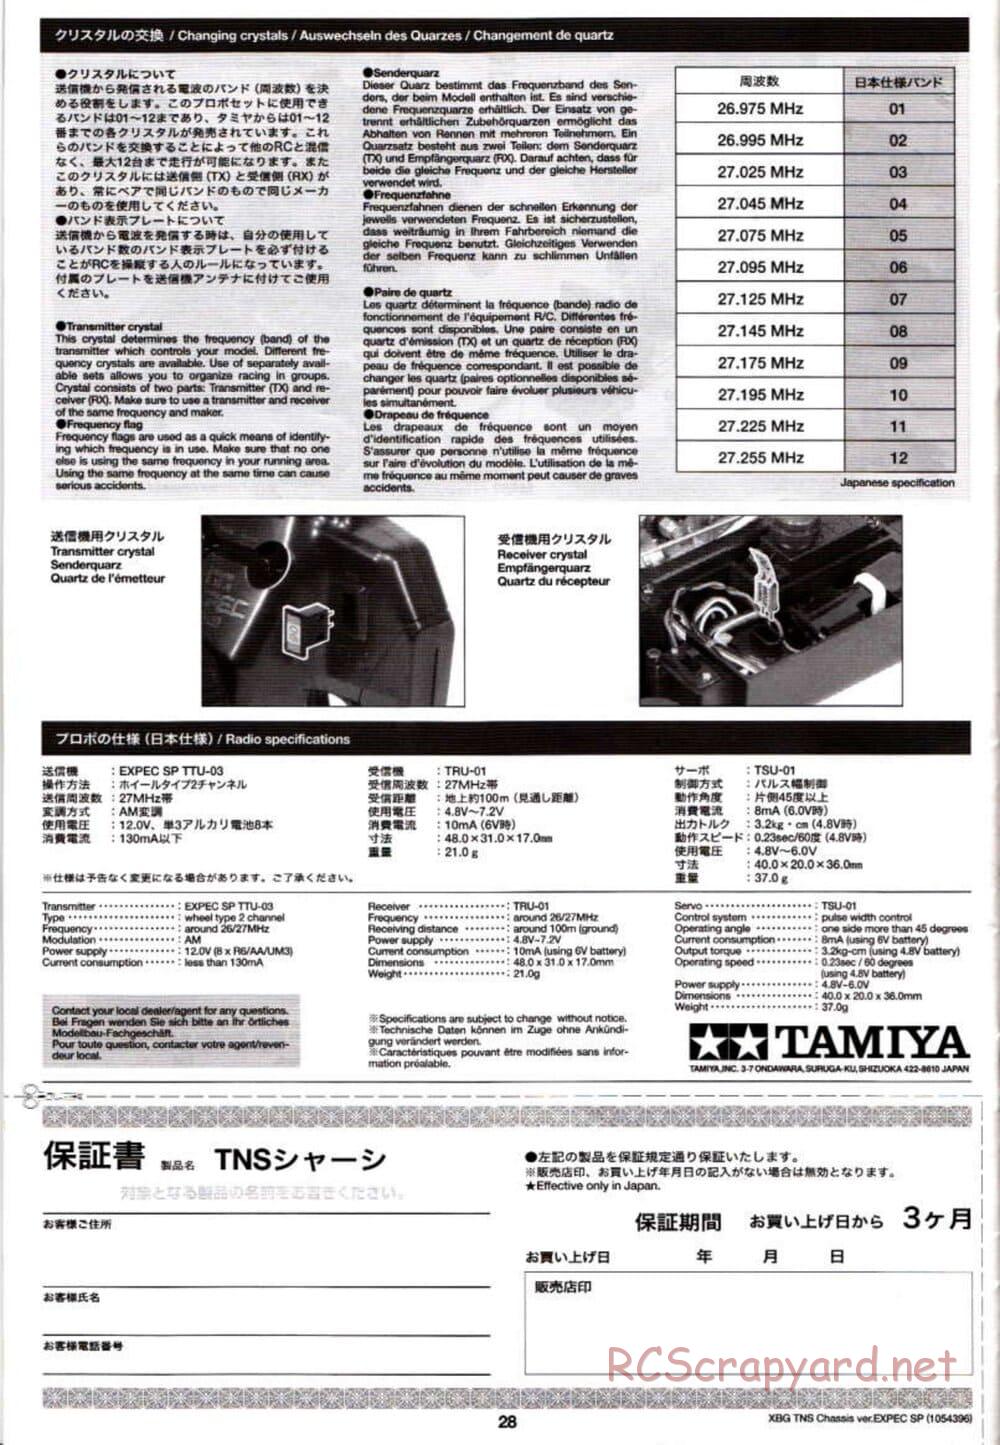 Tamiya - TNS Chassis - Manual - Page 28